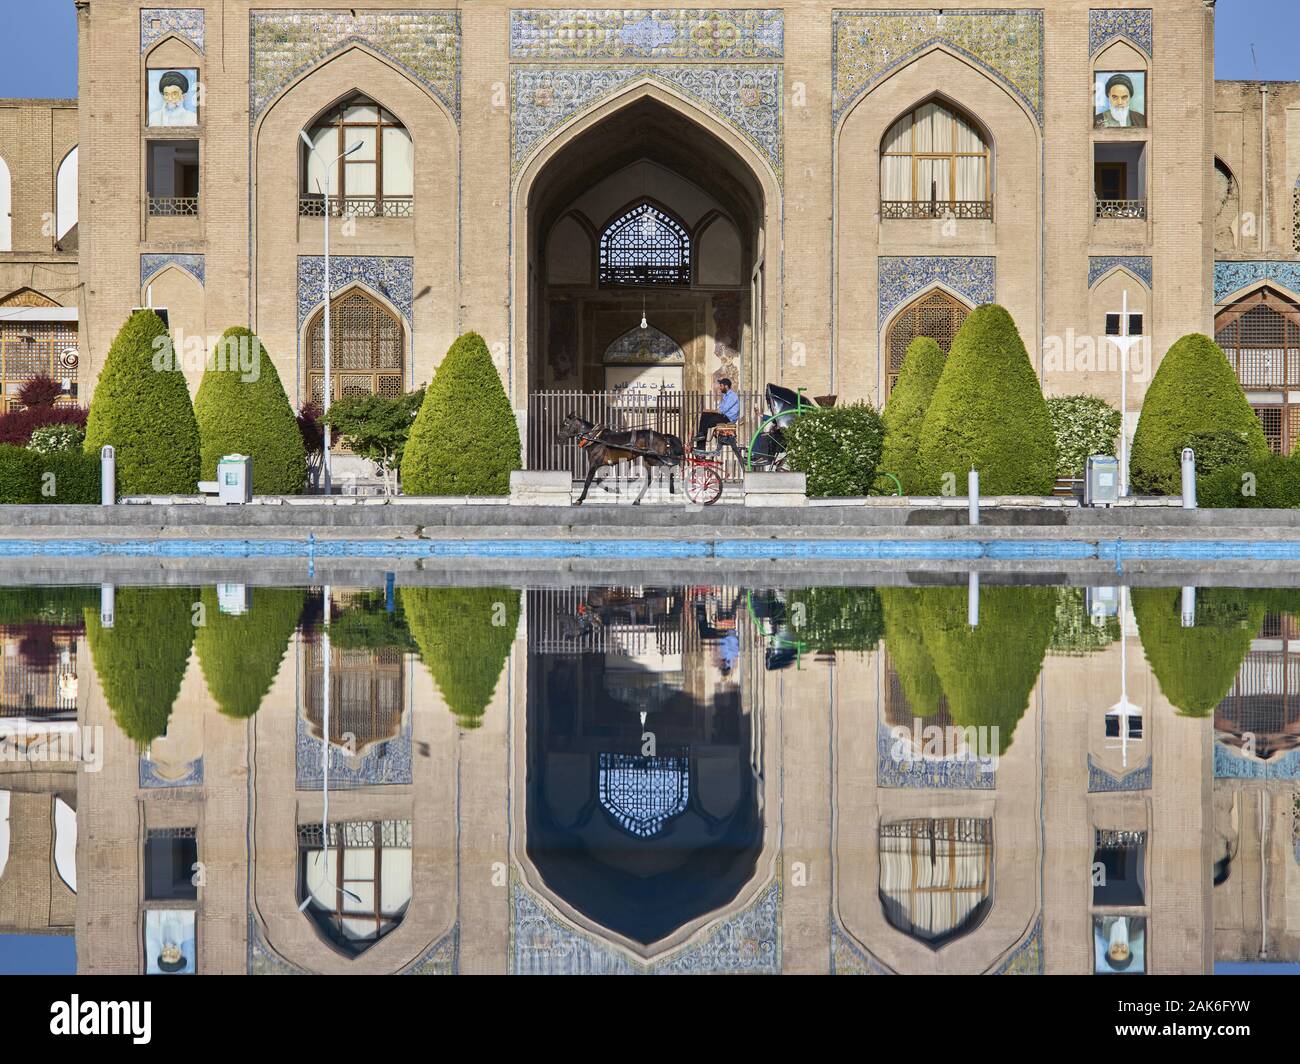 Provinz Isfahan/Stadt Isfahan: Ali-Qapu Torpalast, Hauptzugang zum koenigspalast an der Westseite des Platzes Naqsh-e Djahan, Iran | Verwendung weltweit Stockfoto